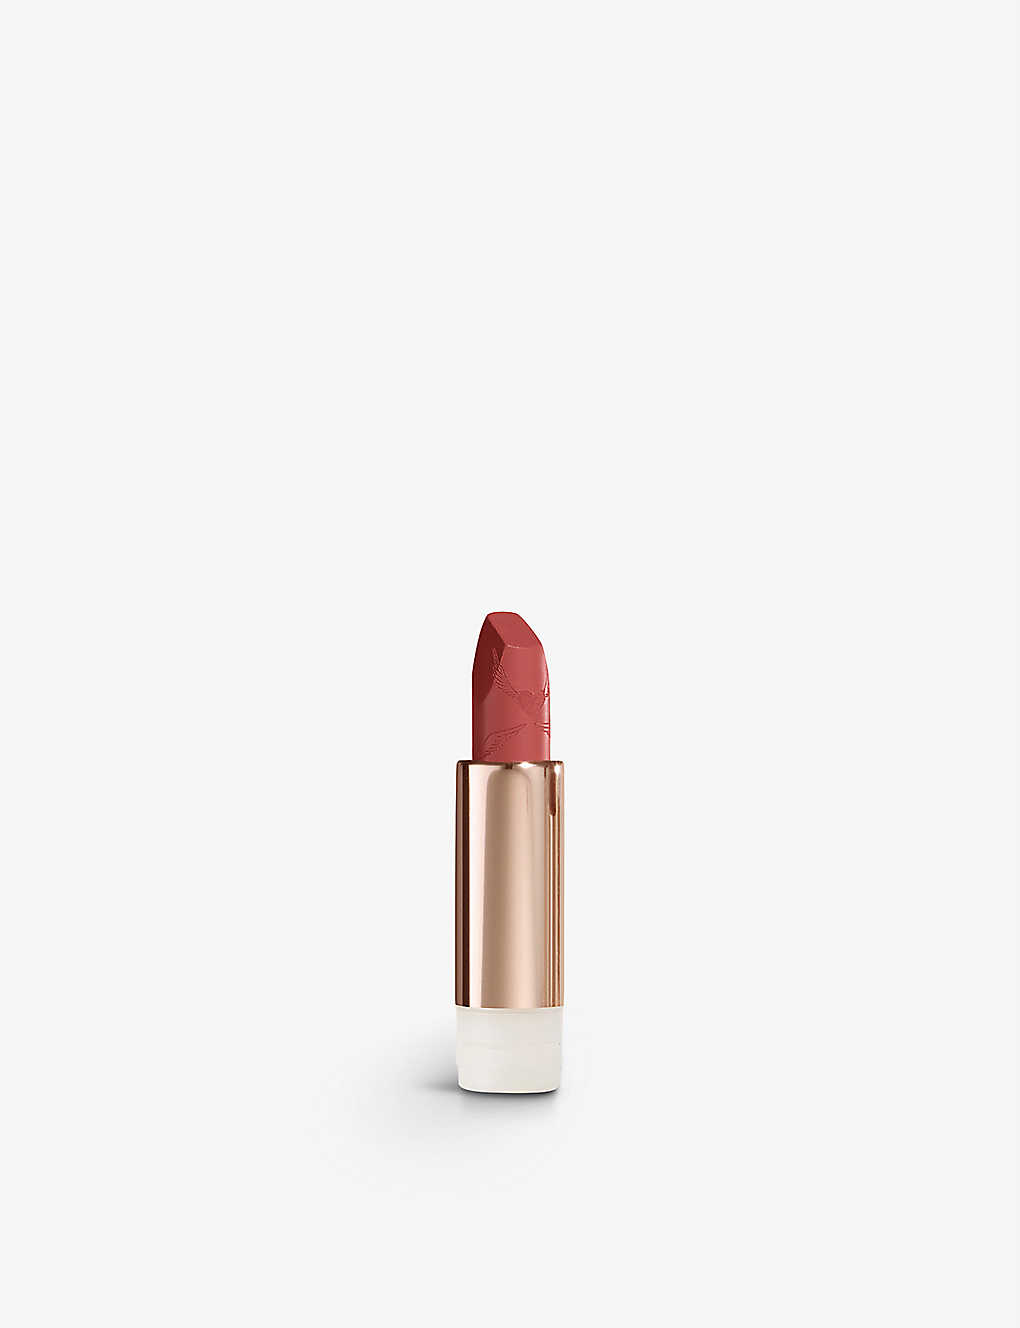 Charlotte Tilbury The Look Of Love Matte Revolution Lipstick Refill 3.5g In Mrs Kisses